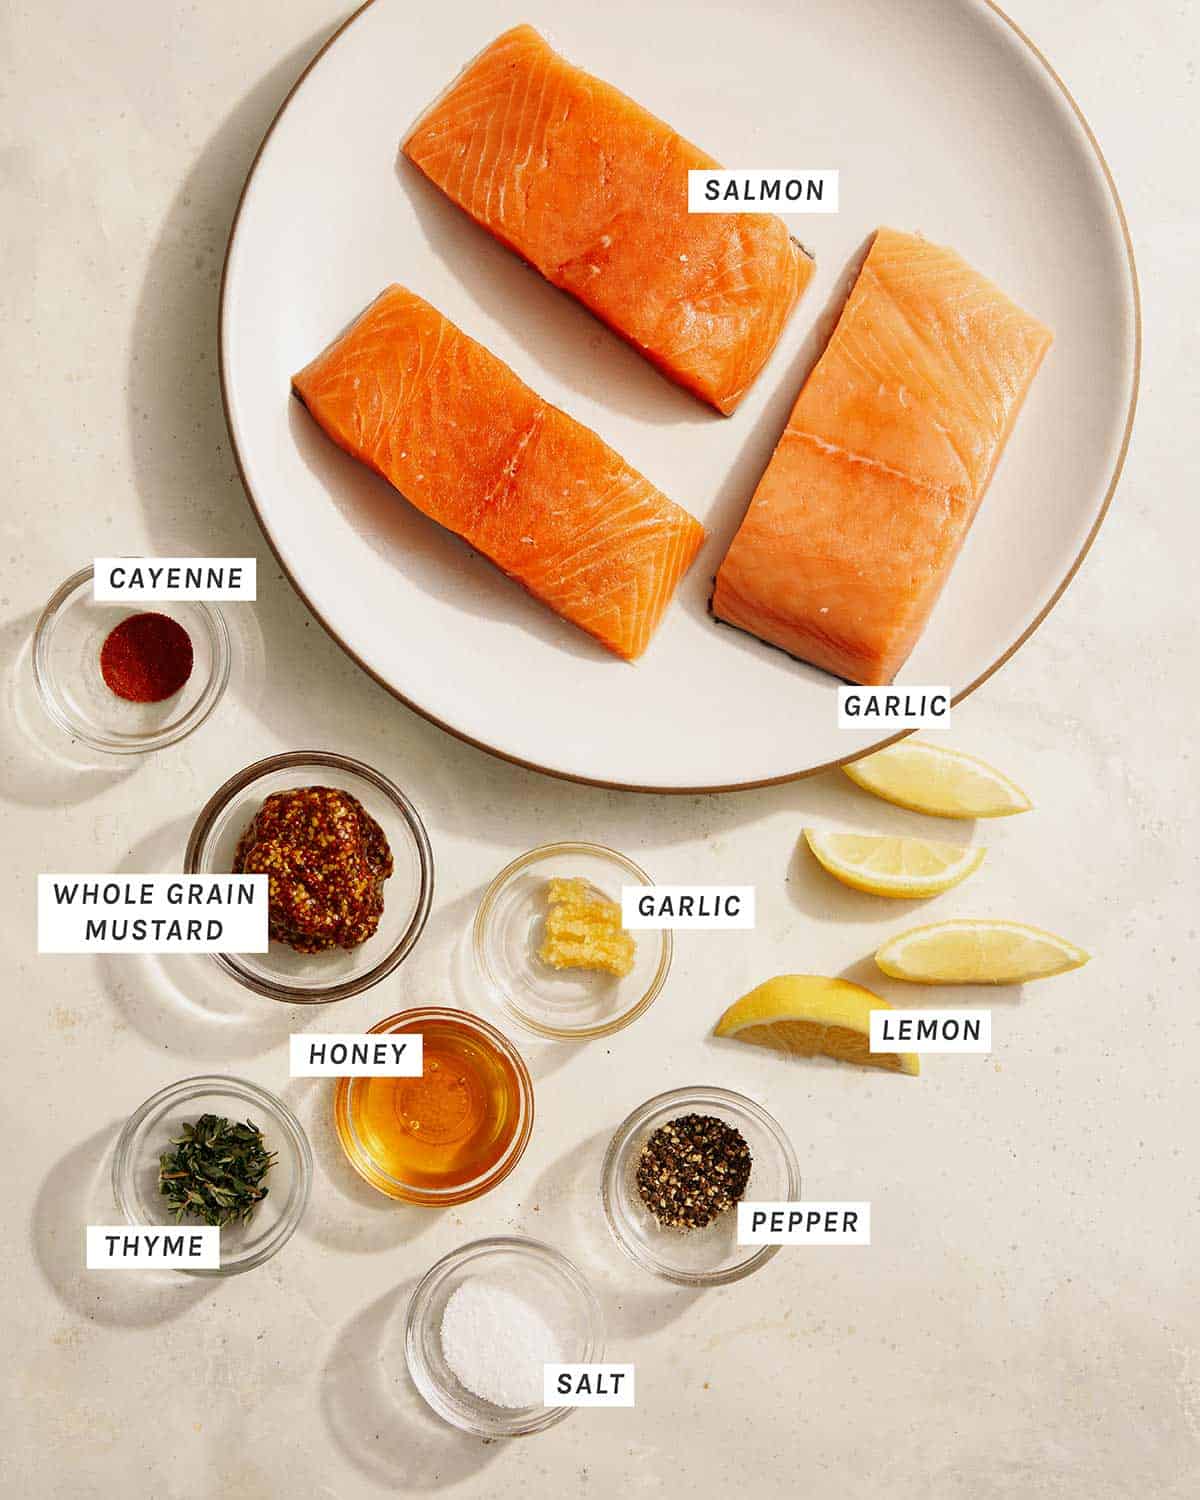 Air fryer salmon ingredients. 